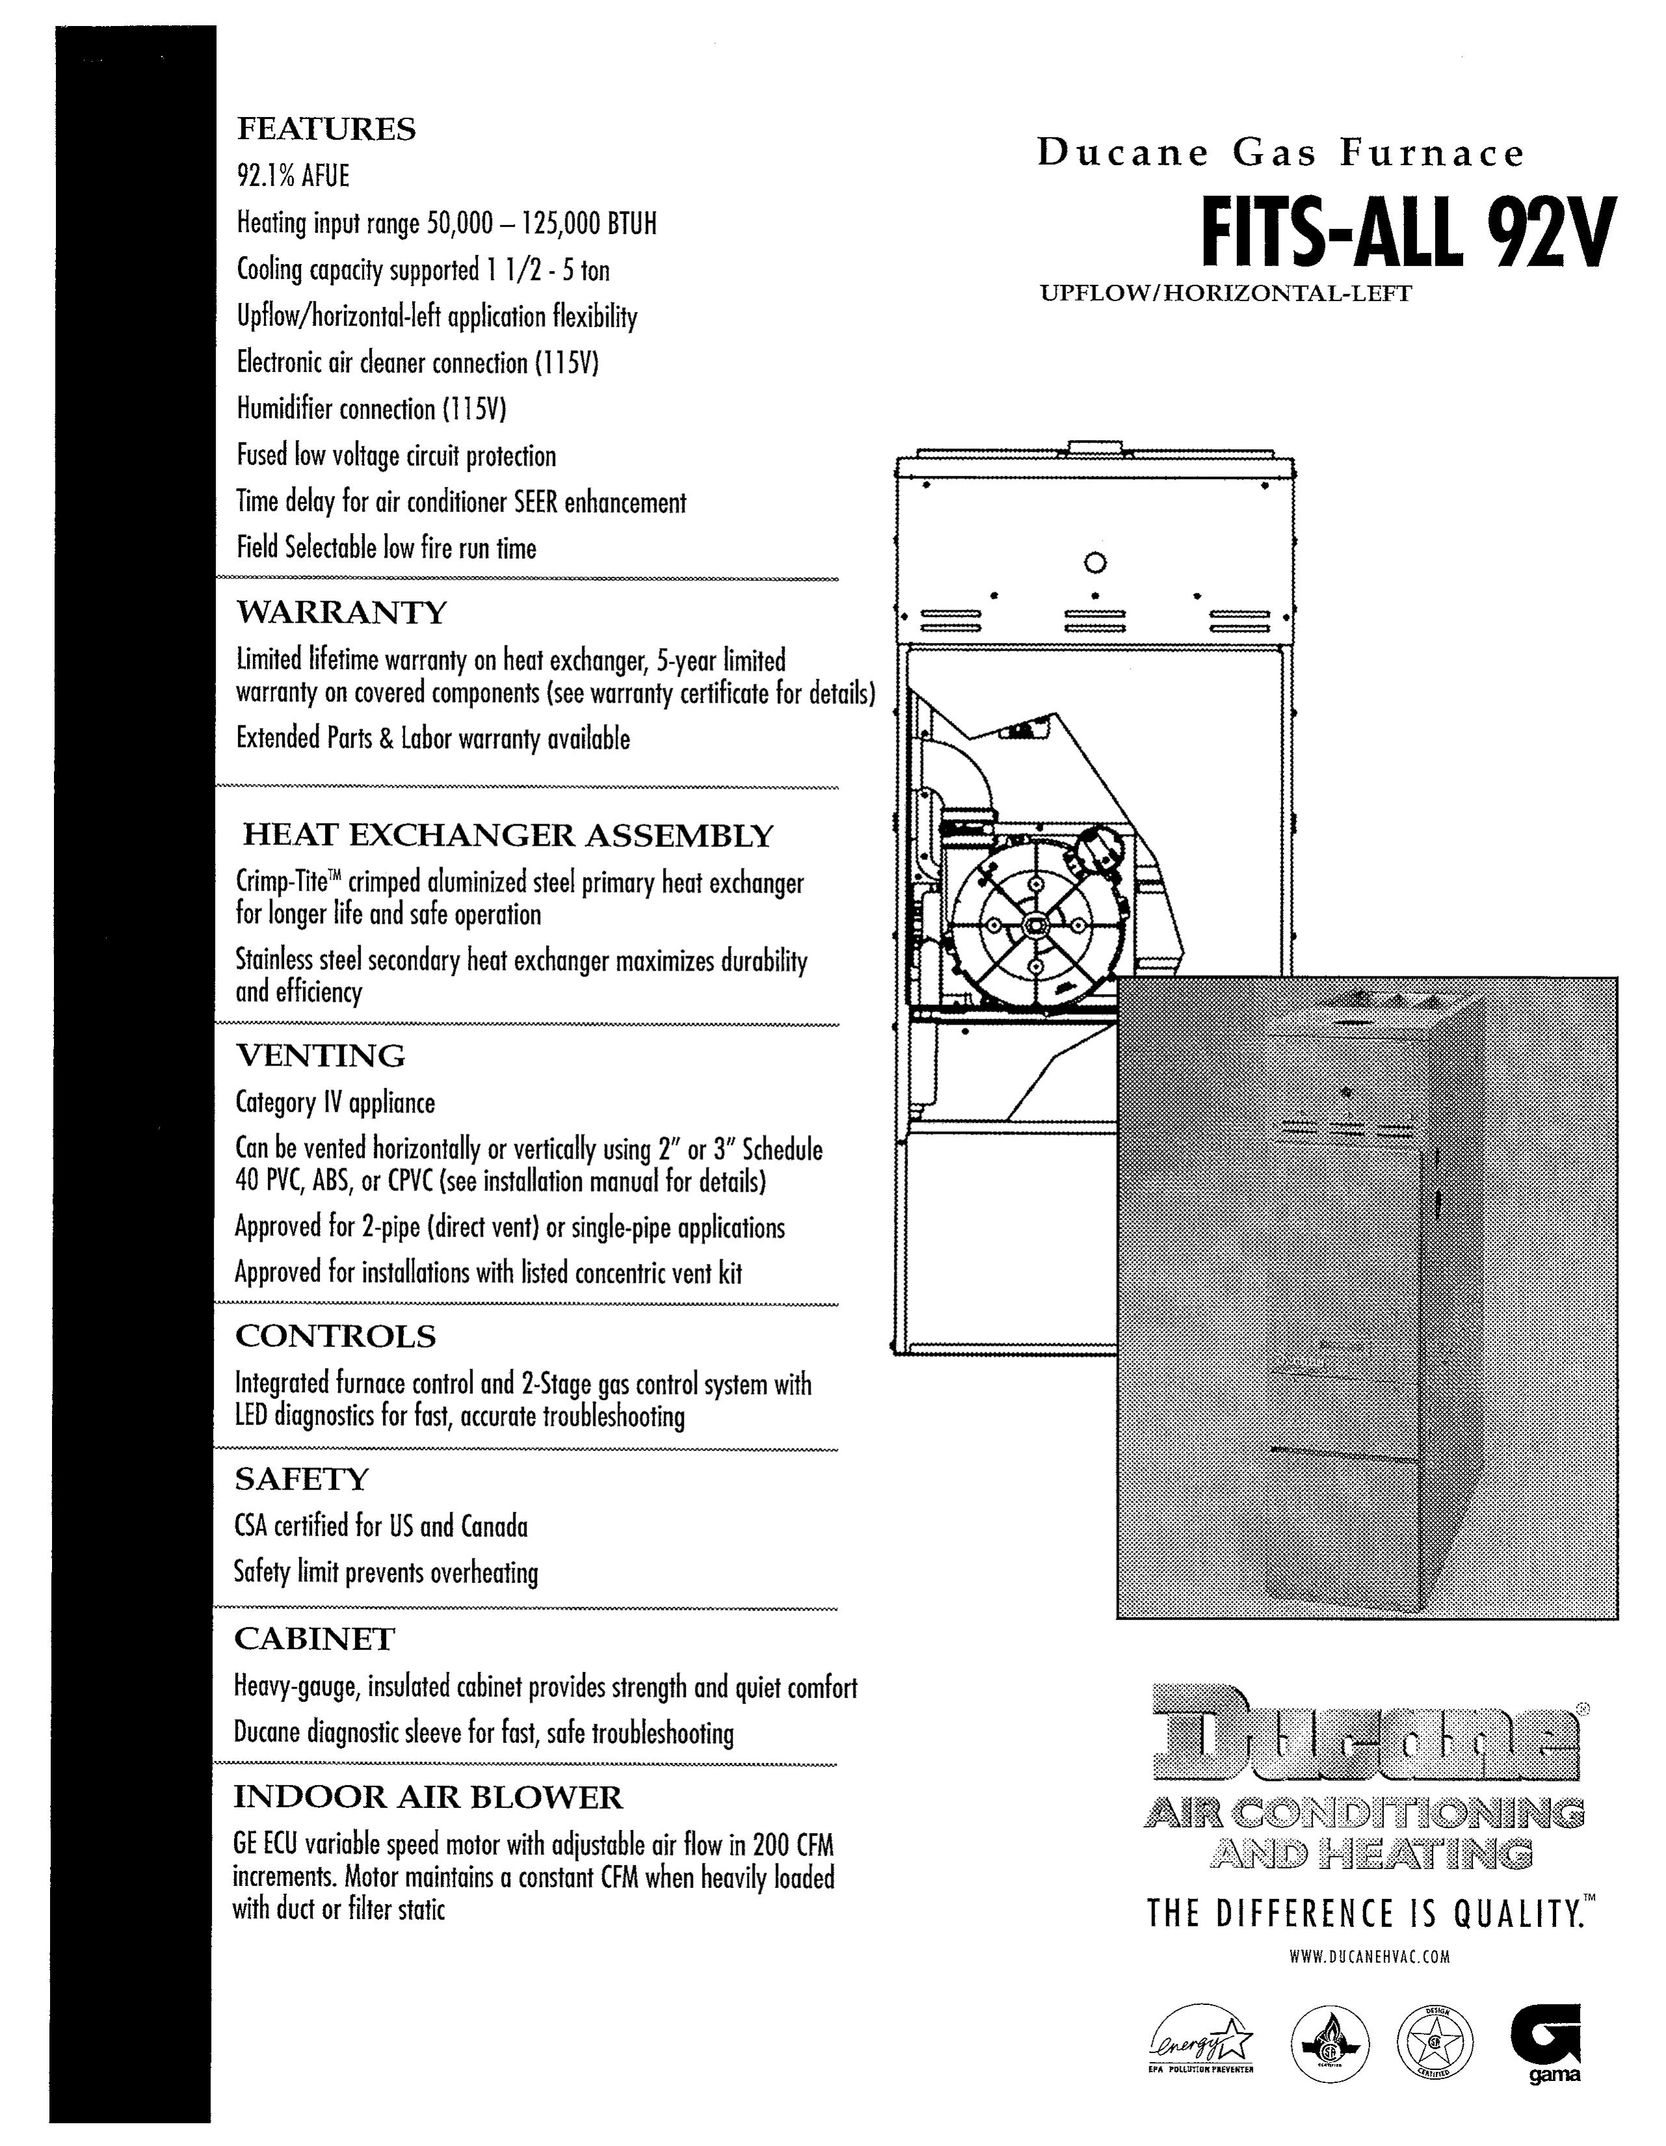 Ducane (HVAC) FITS-ALL 92V Furnace User Manual